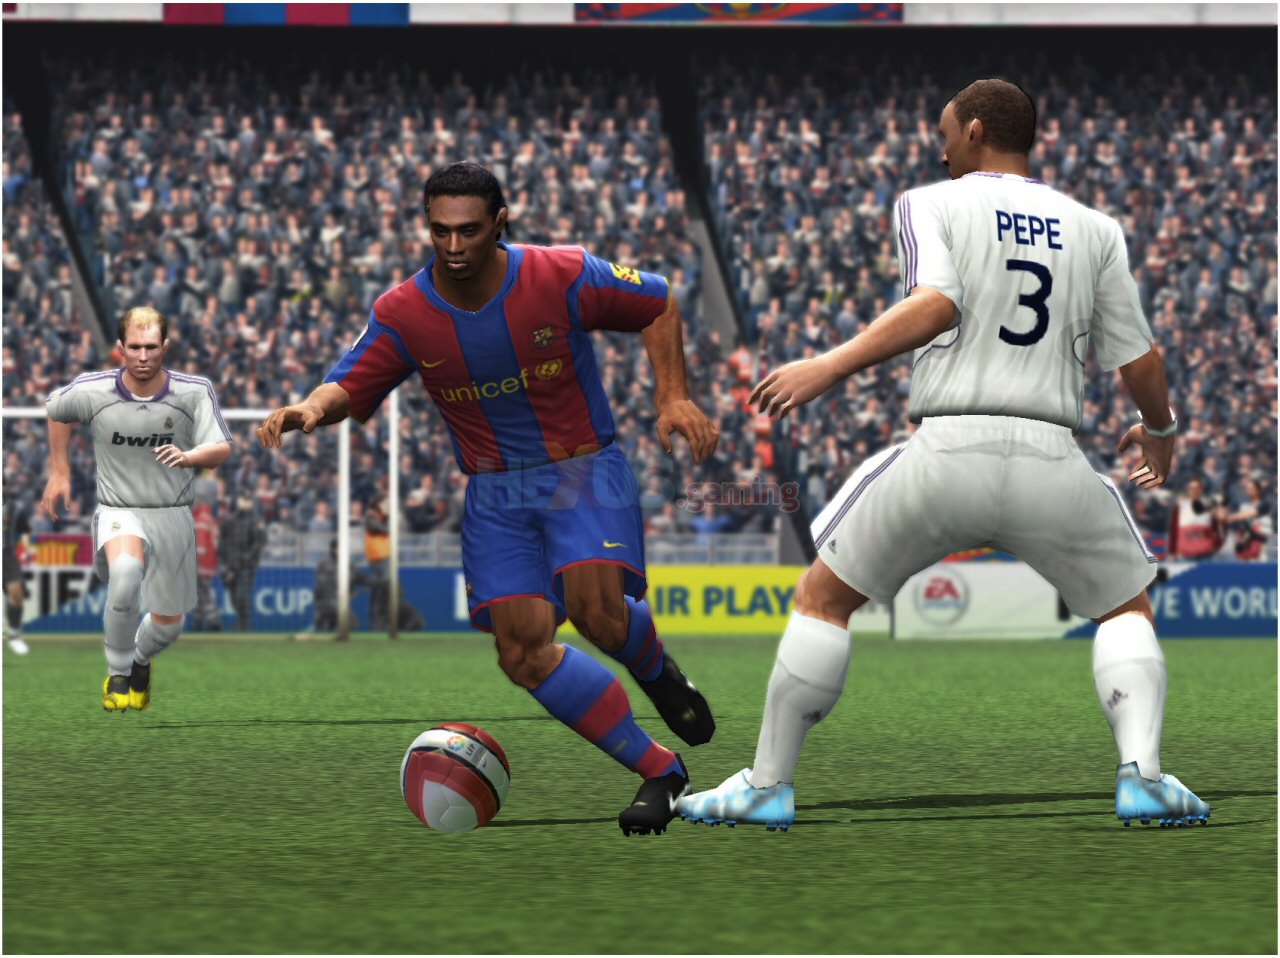 G1 > Tecnologia - NOTÍCIAS - 'Fifa 09' ganha narração em português para  Xbox 360 e PlayStation 3